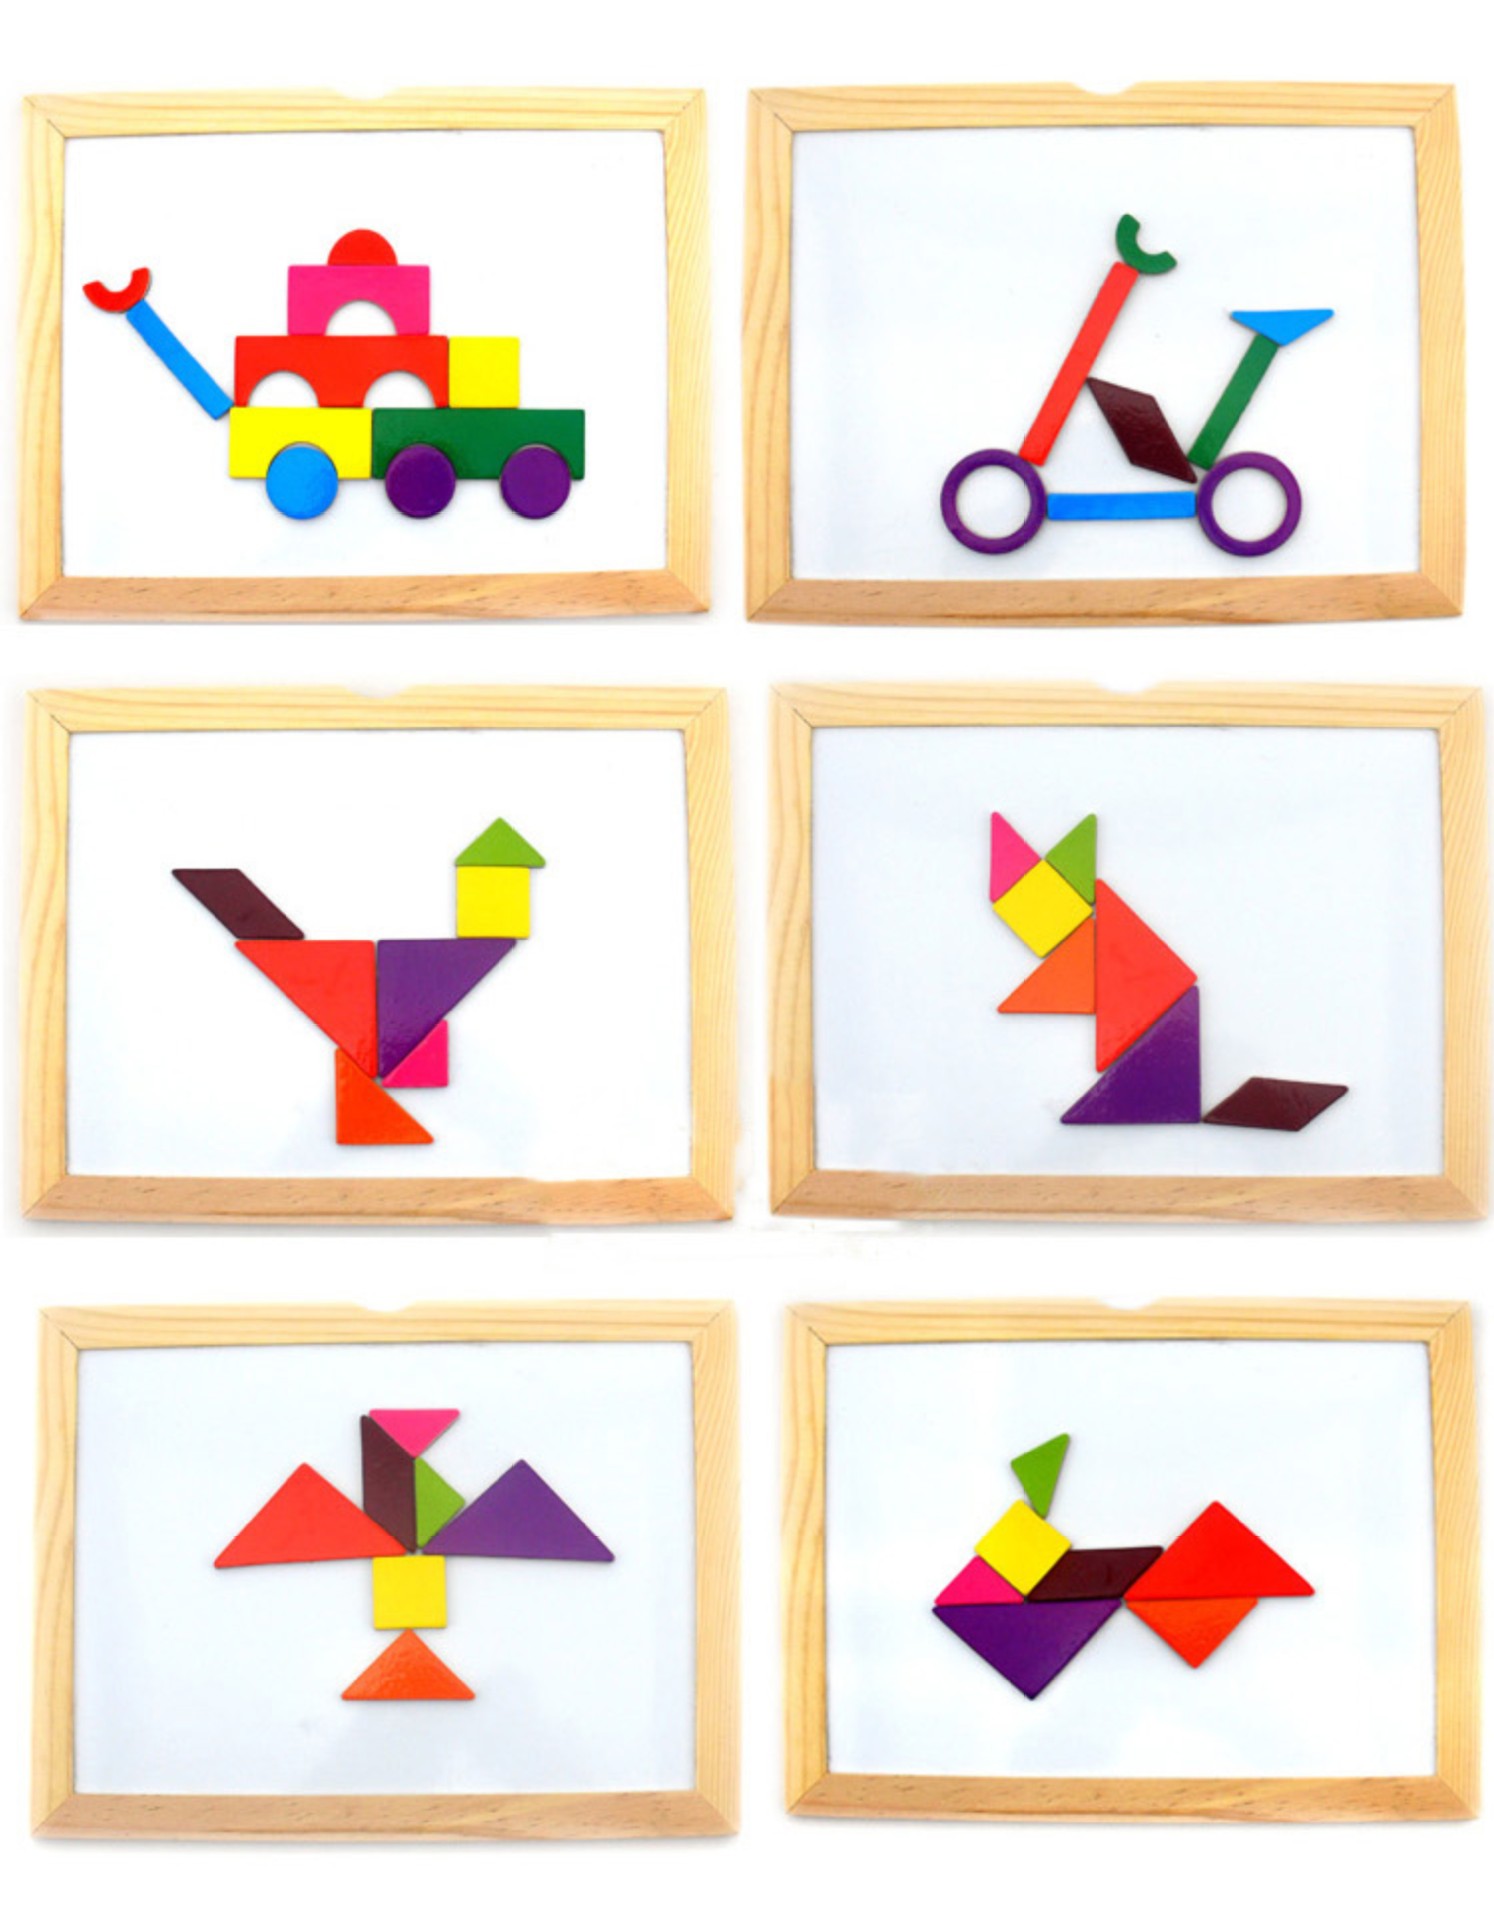 来比乐 多功能磁性拼拼乐 木制玩具 益智拼图七巧板 几何形状